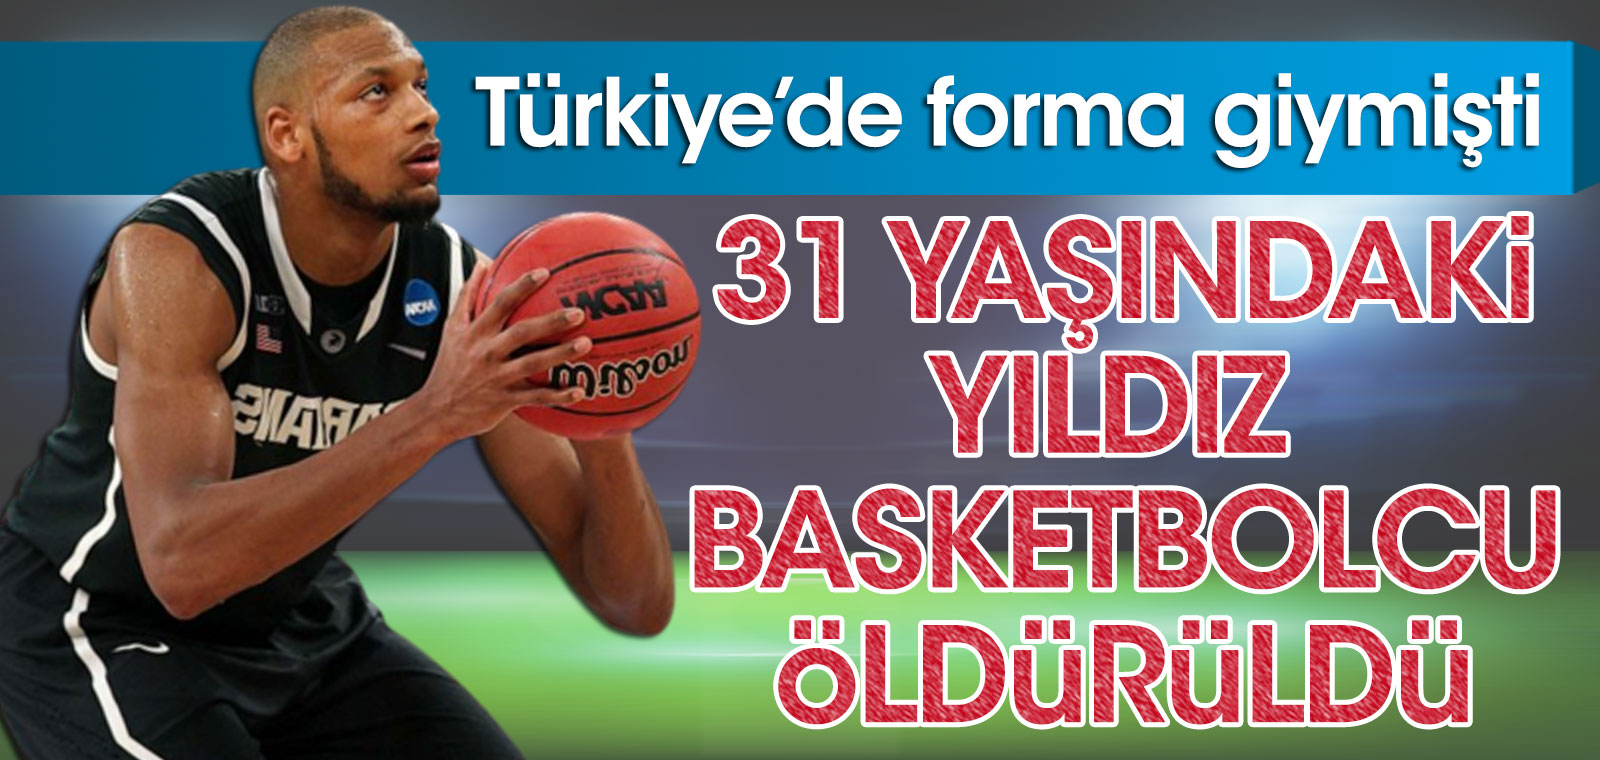 Yıldız basketbolcu 31 yaşında öldürüldü. Türkiye'de forma giymişti